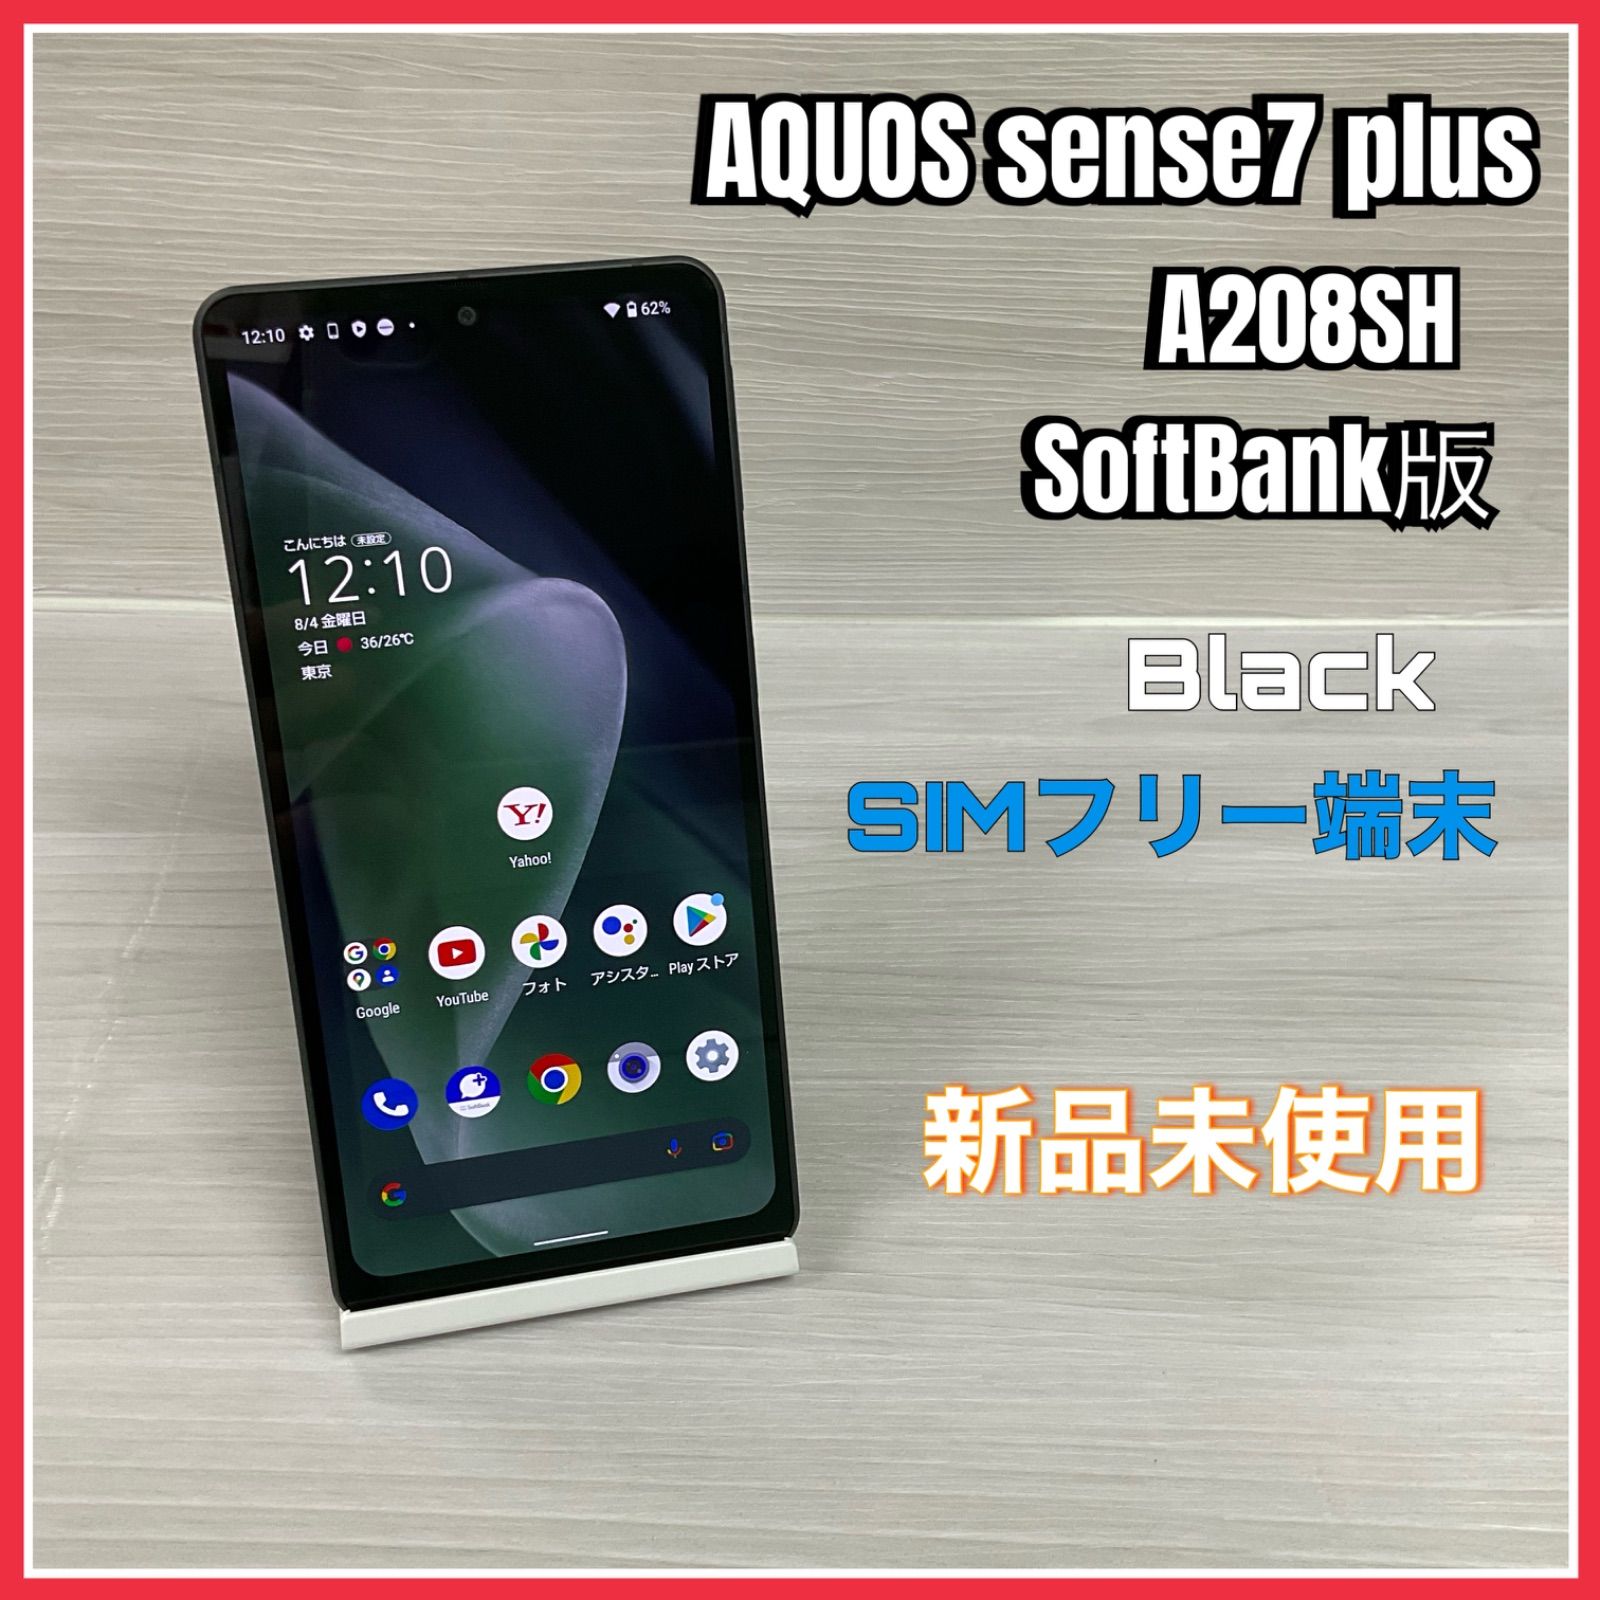 新品AQUOS sence7 plus(A208SH)Black-